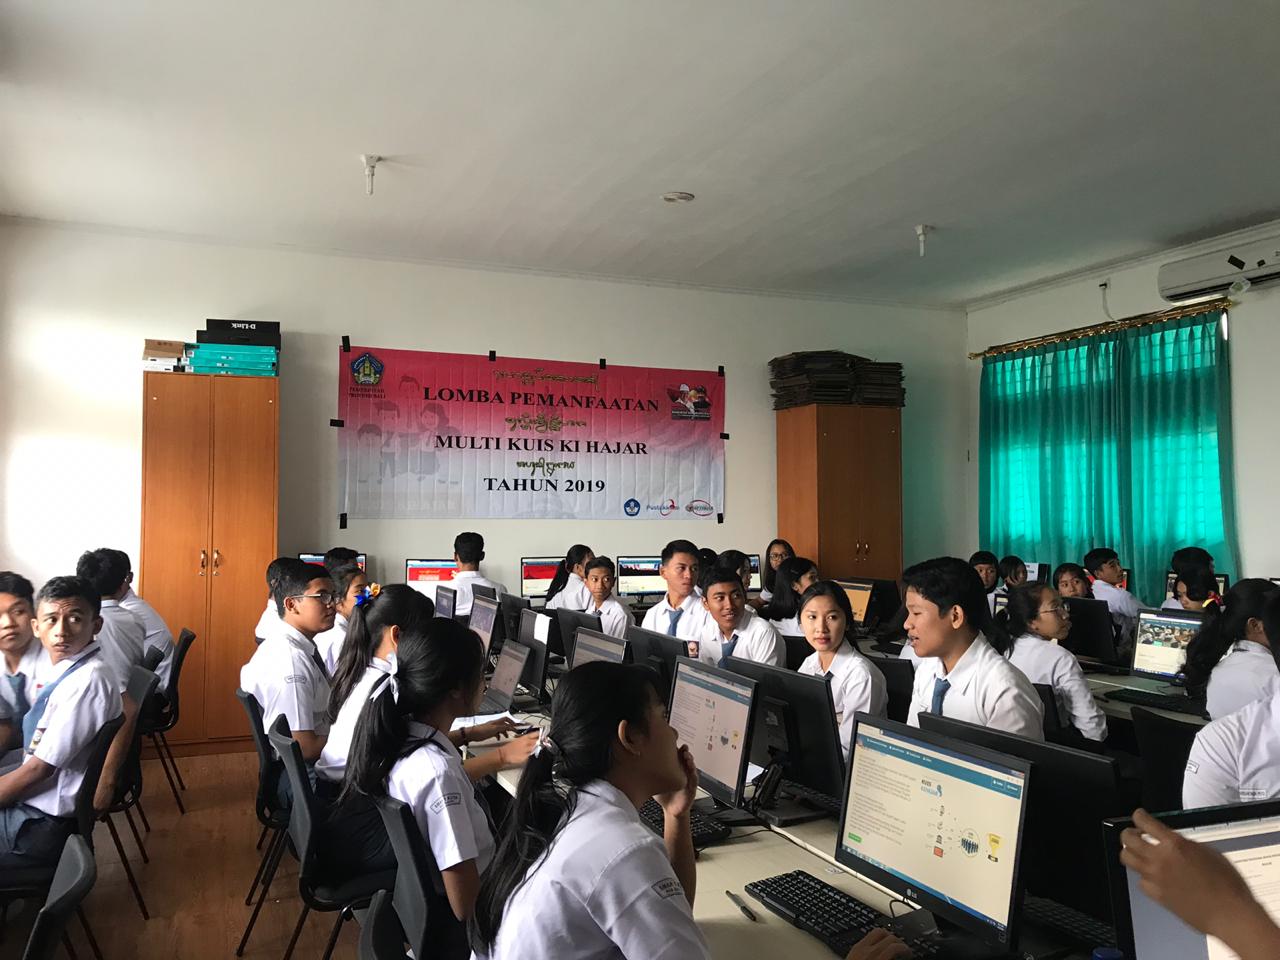 Kuis kihajar 2019 diikuti siswa/siswi terbaik se kabupaten badung